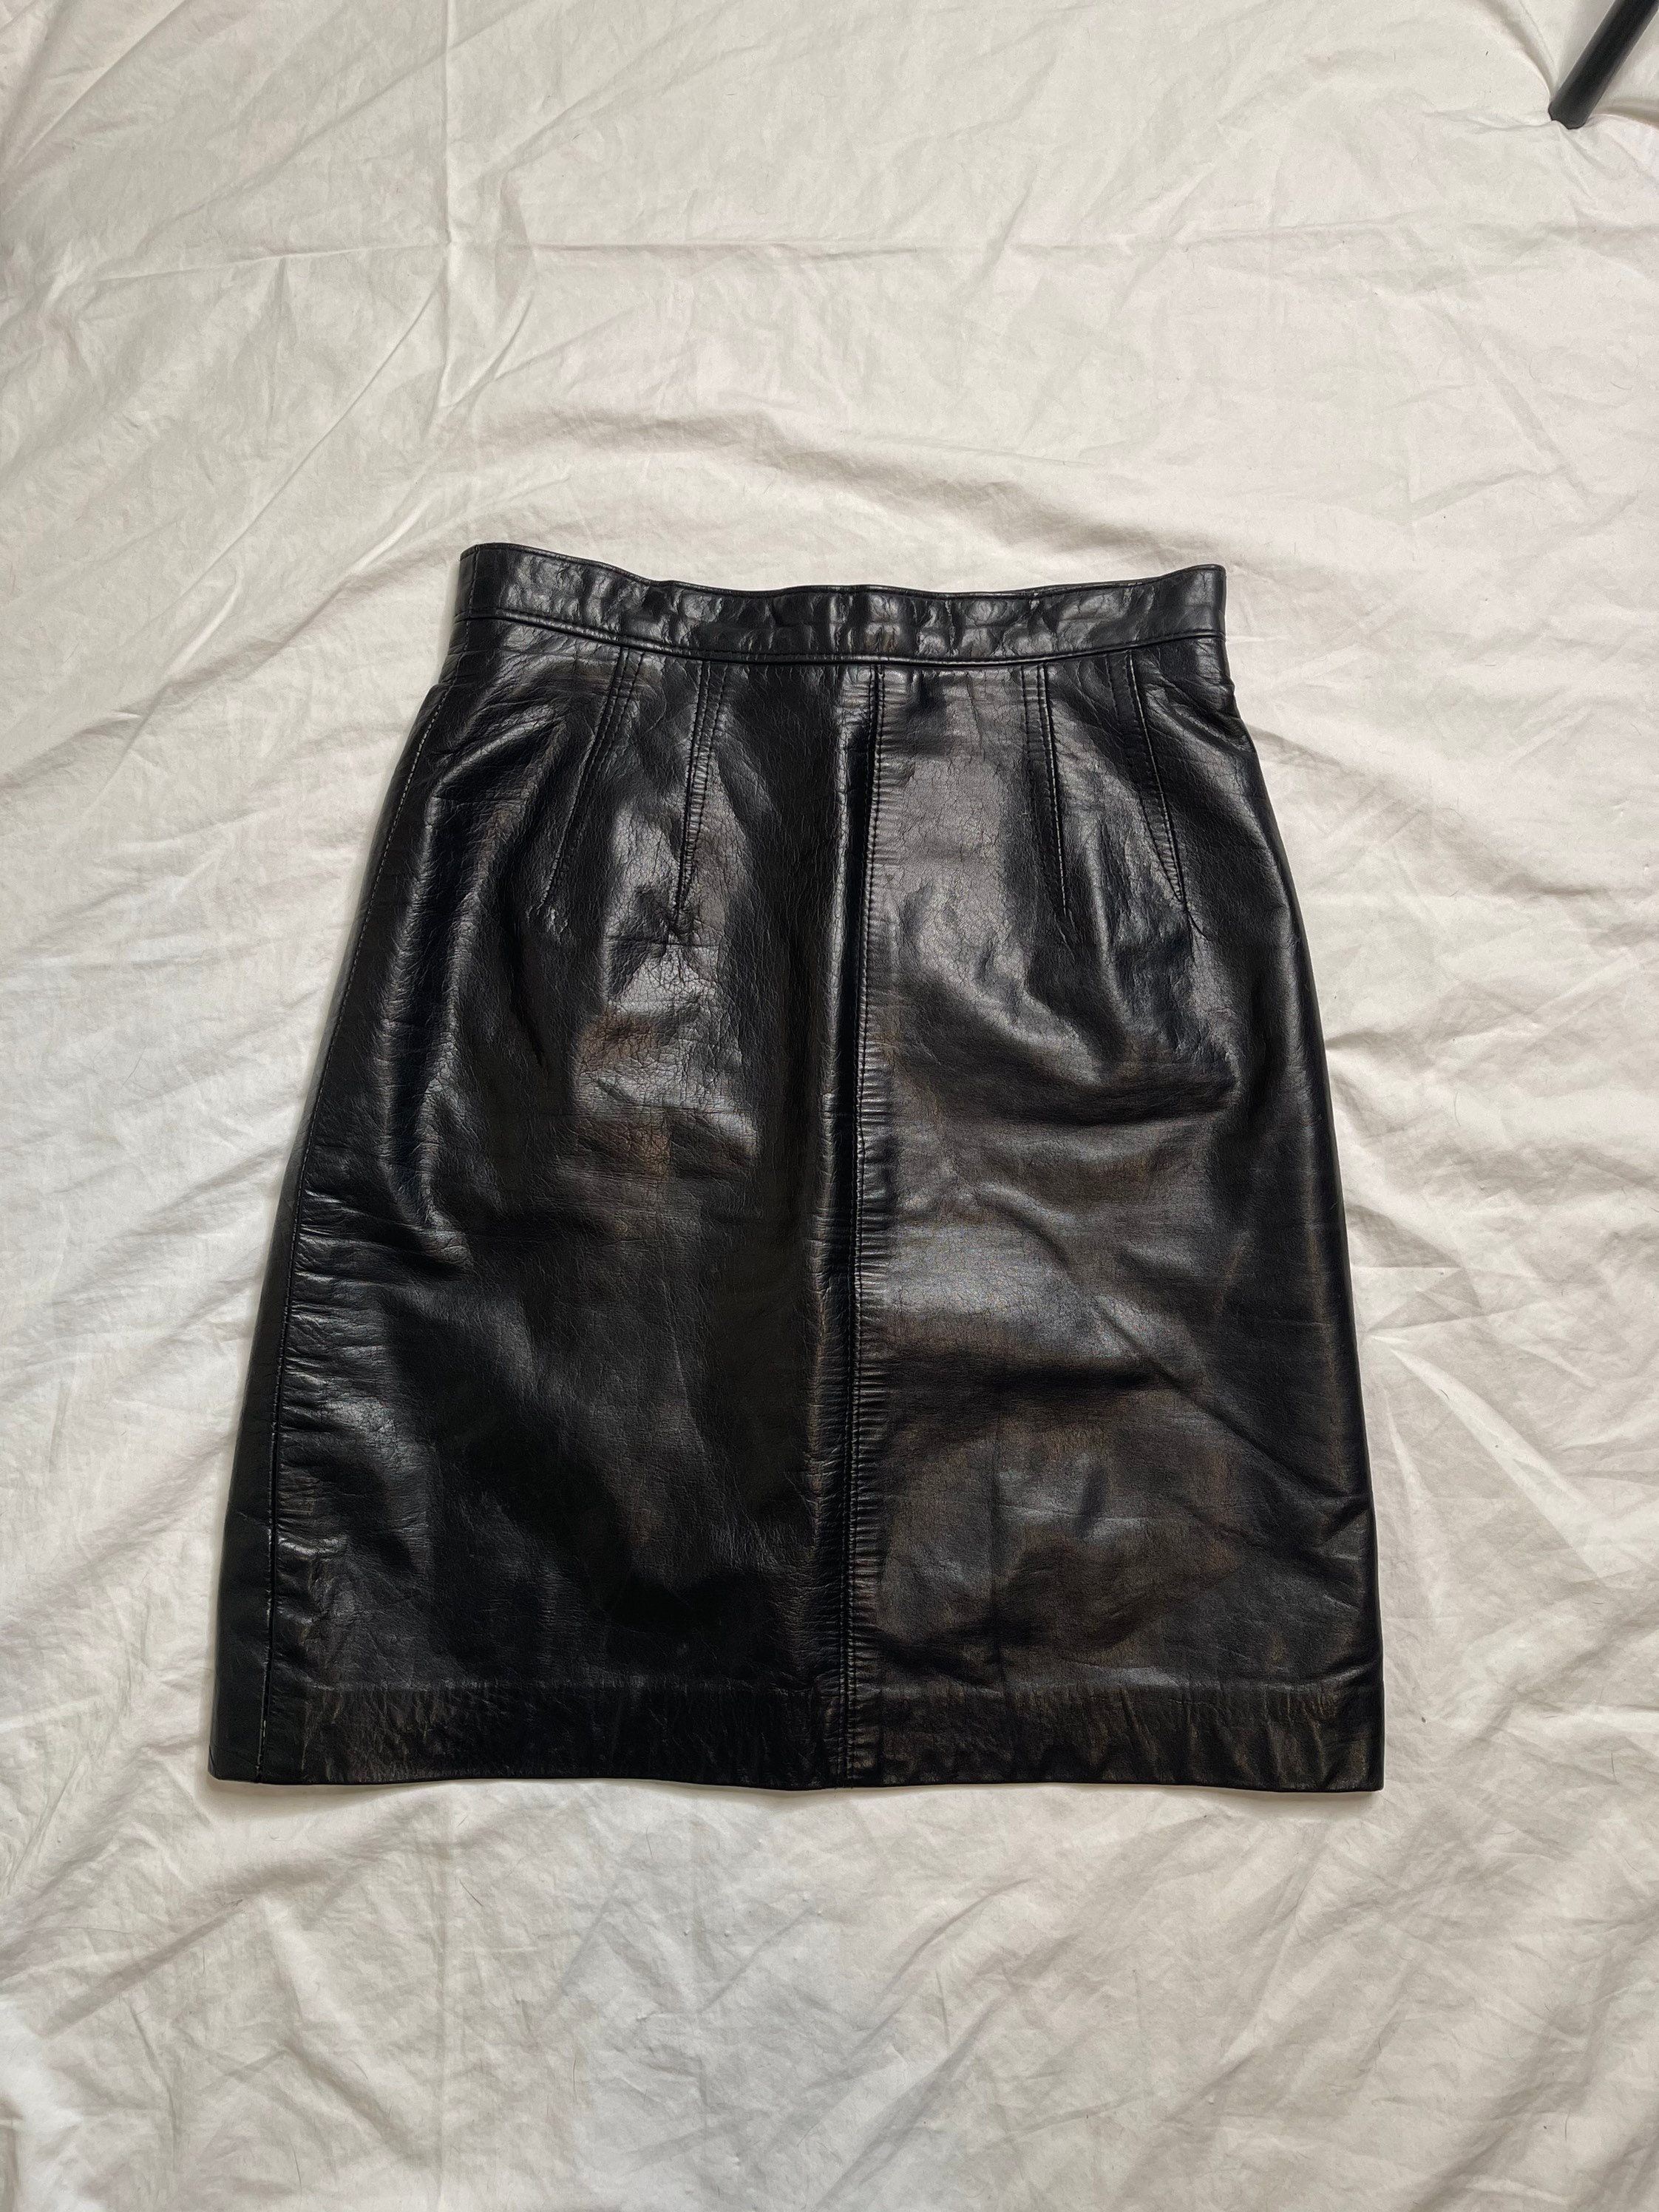 Vintage Danier leather mini skirt | Etsy